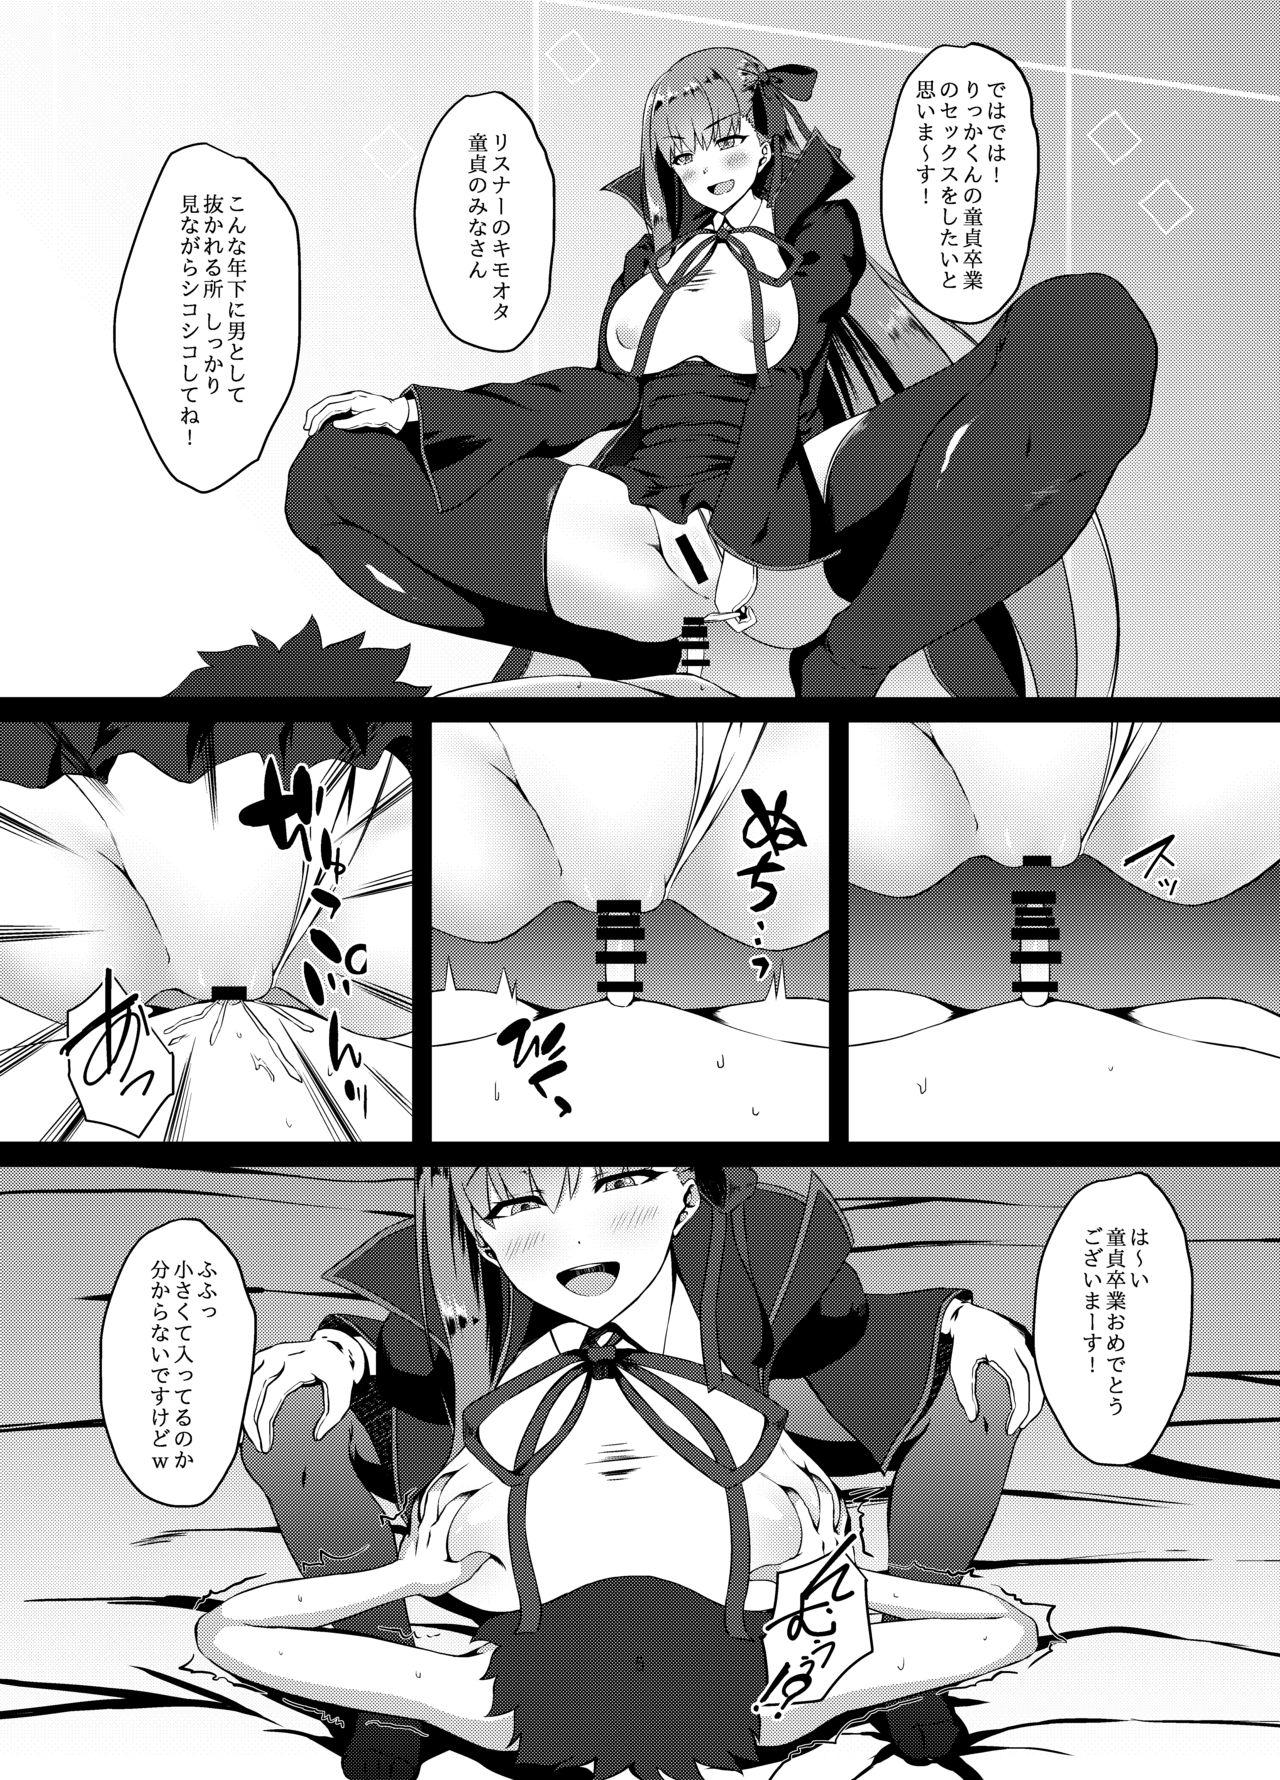 Ruiva FDO Fate/Dosukebe Order VOL.0 - Fate grand order Couple Sex - Page 4